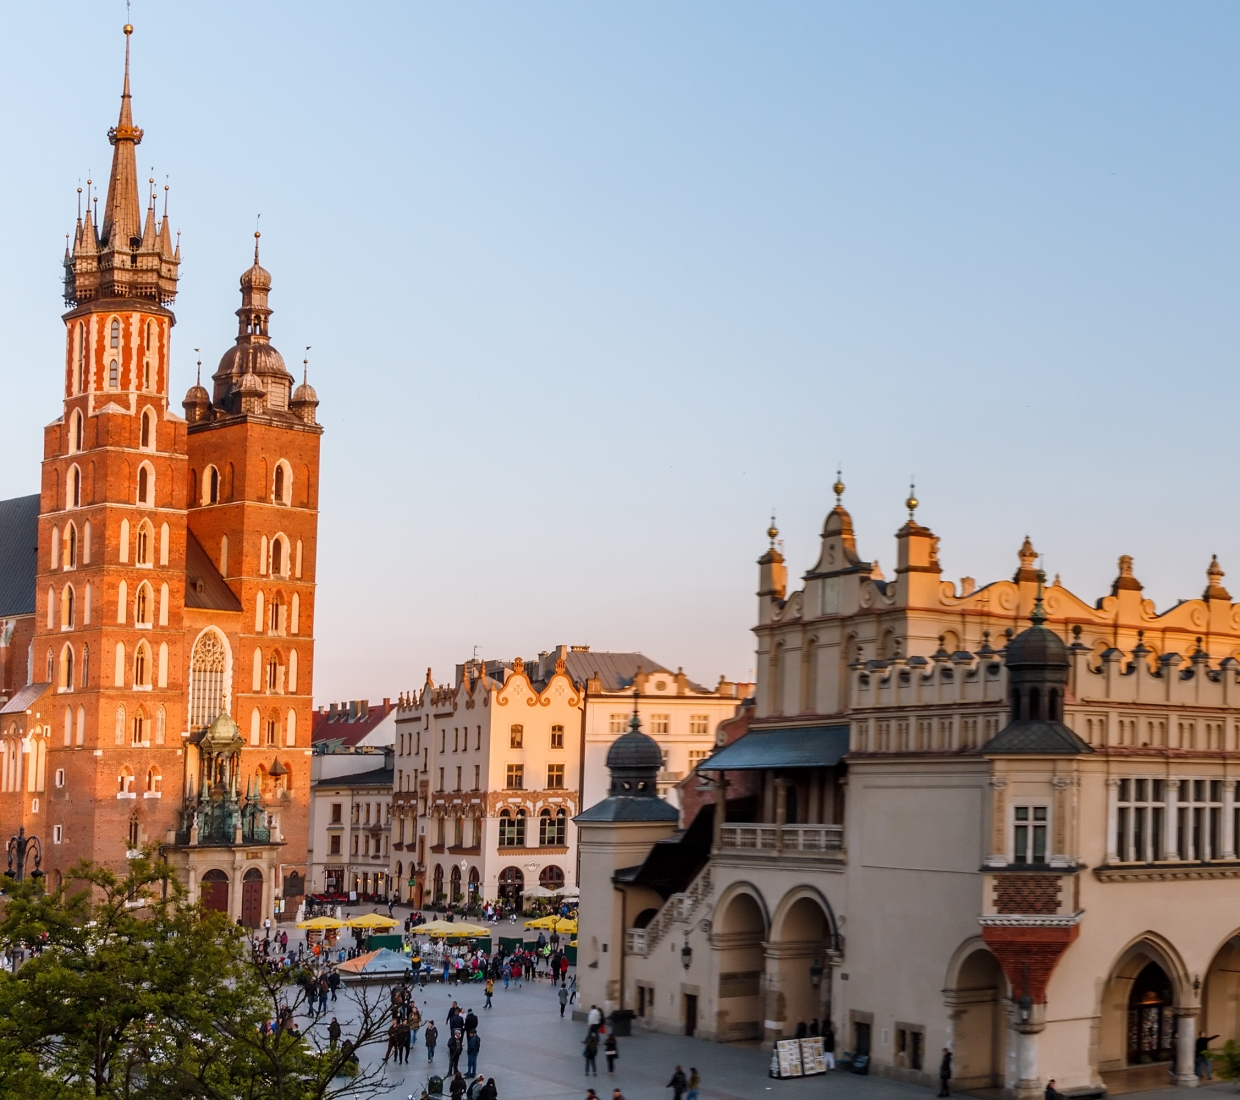 Hotéis boutique, hotéis de charme e turismo rural Krakow